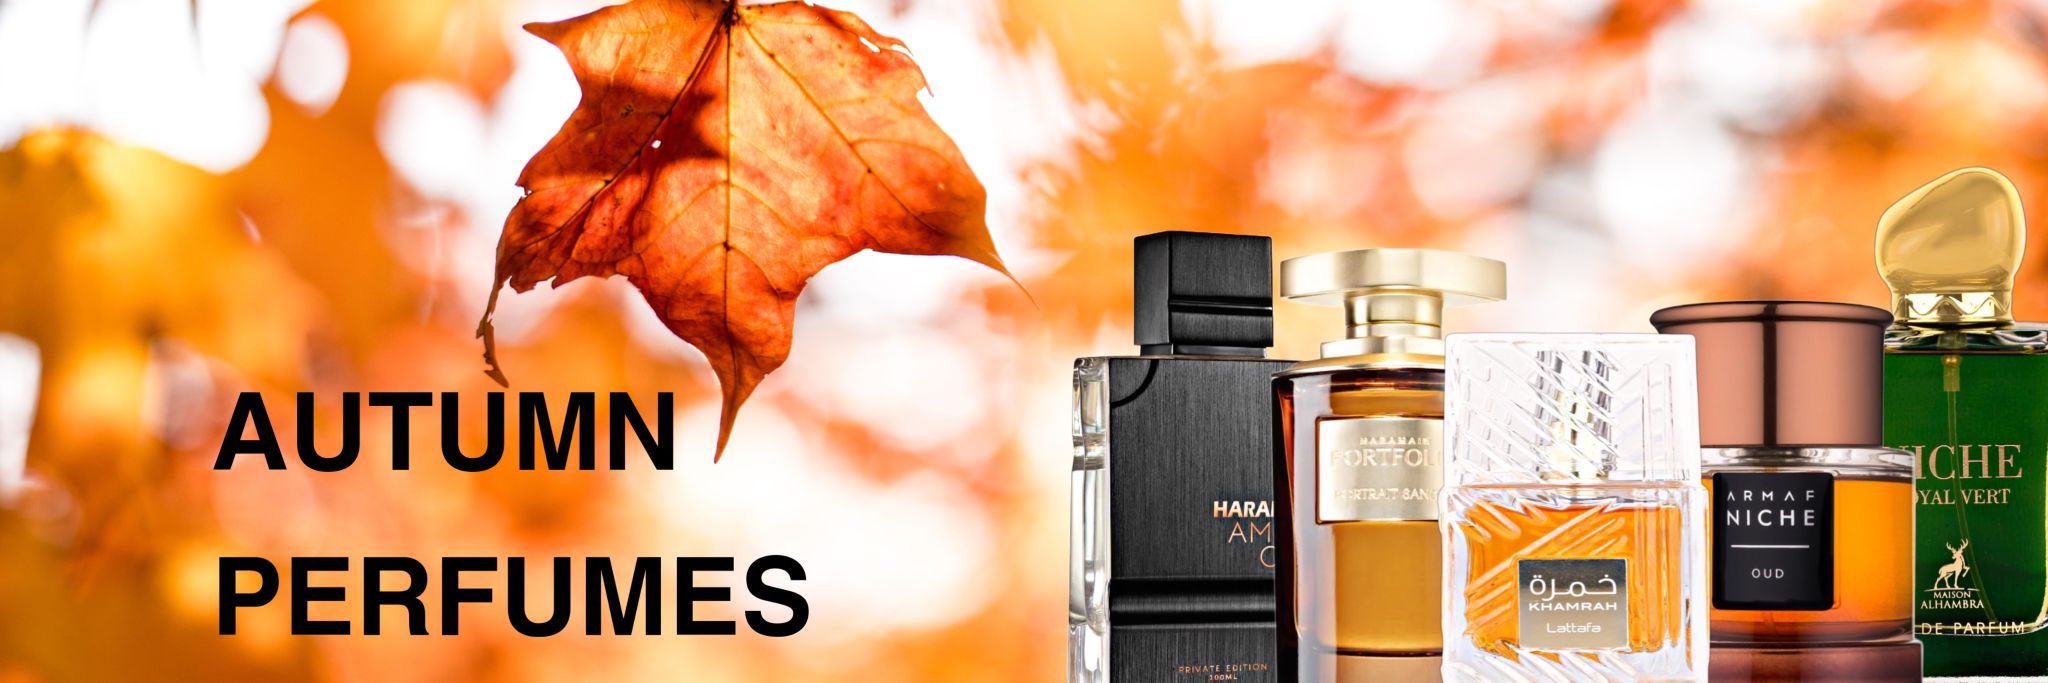 Autumn Perfumes